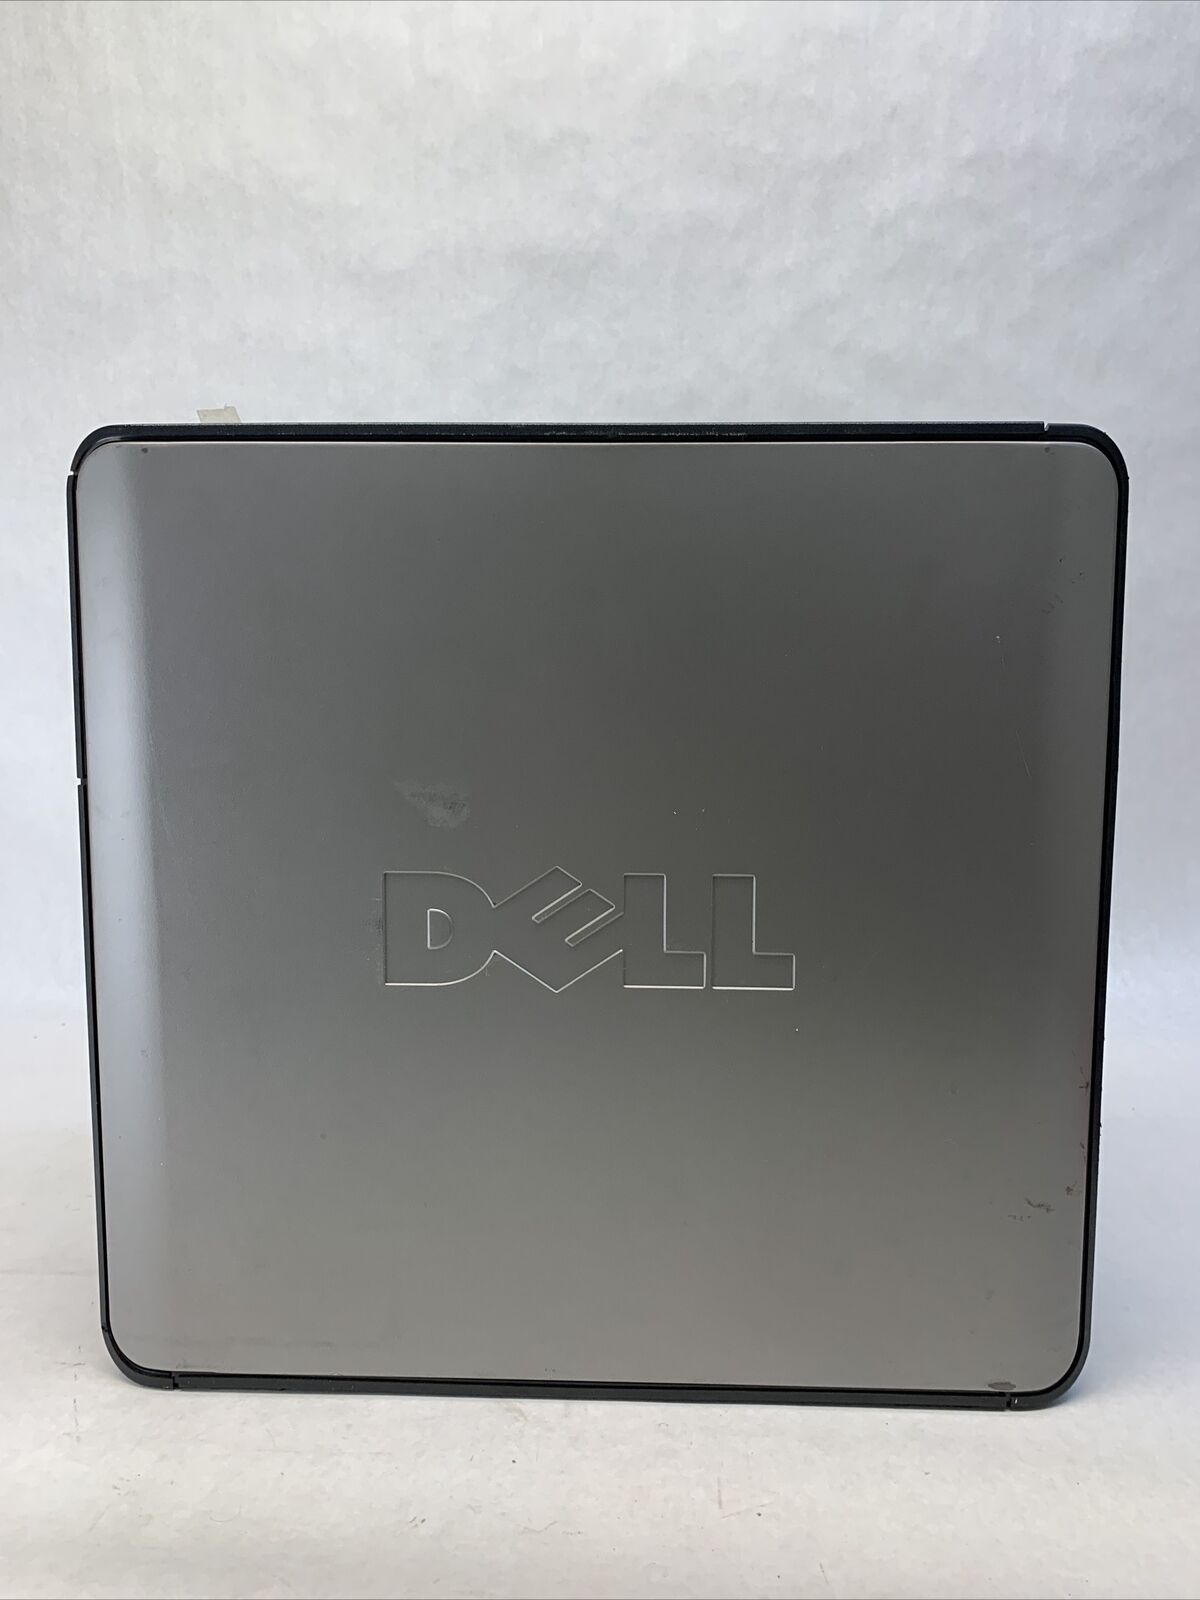 Dell Optiplex 360 MT Intel Core 2 Duo E7500 2.93GHz 2GB RAM No HDD No OS